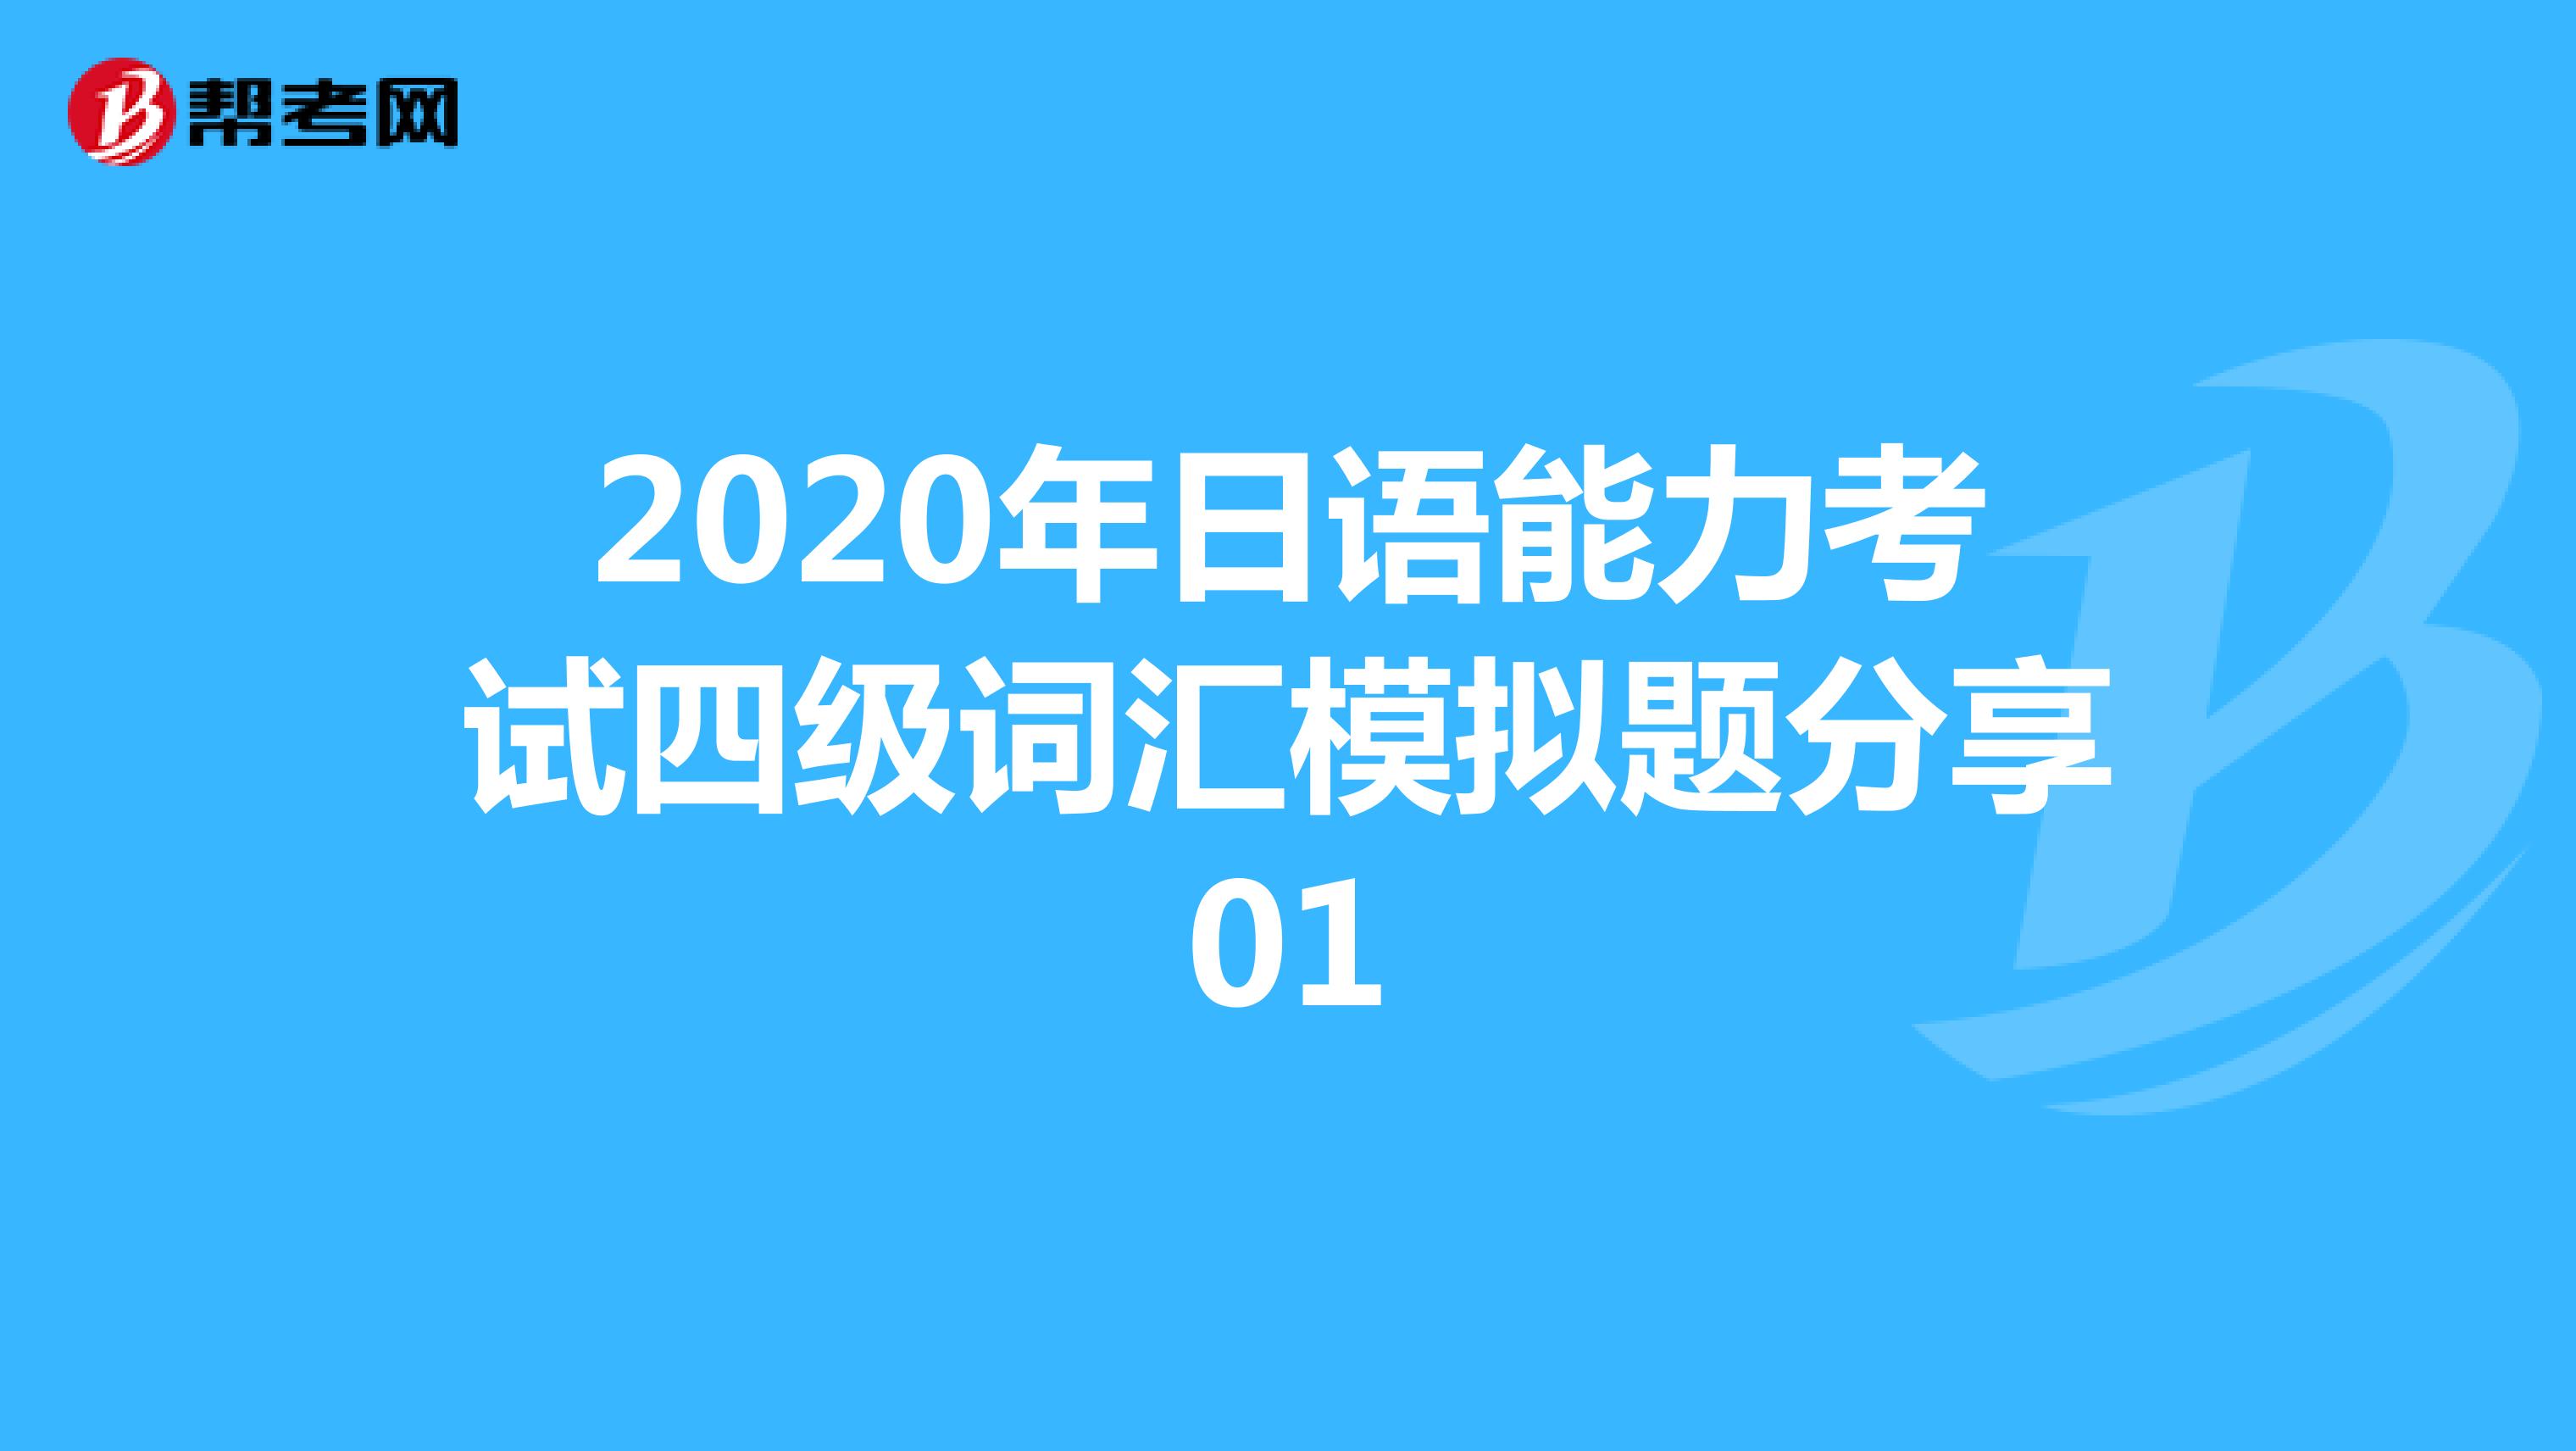 2020年日语能力考试四级词汇模拟题分享01